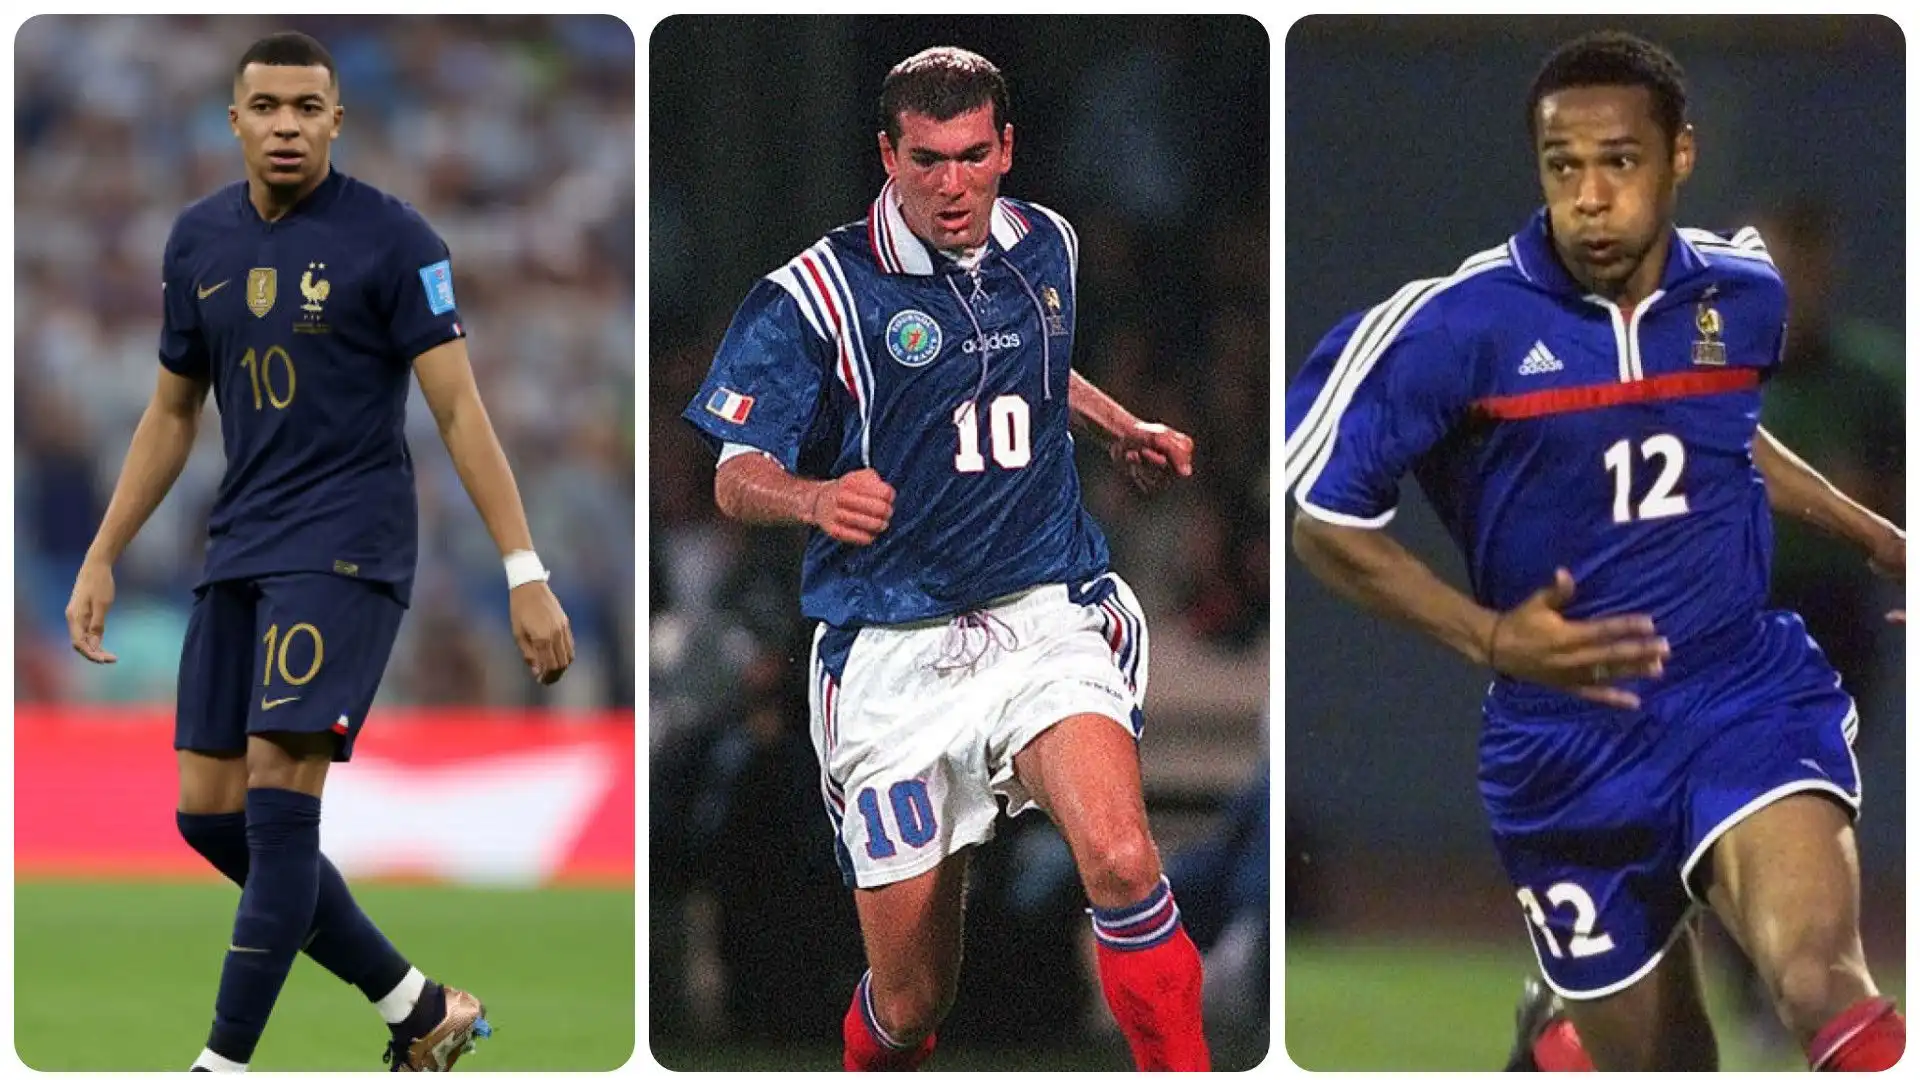 I migliori calciatori francesi della storia: la risposta dell'intelligenza artificiale